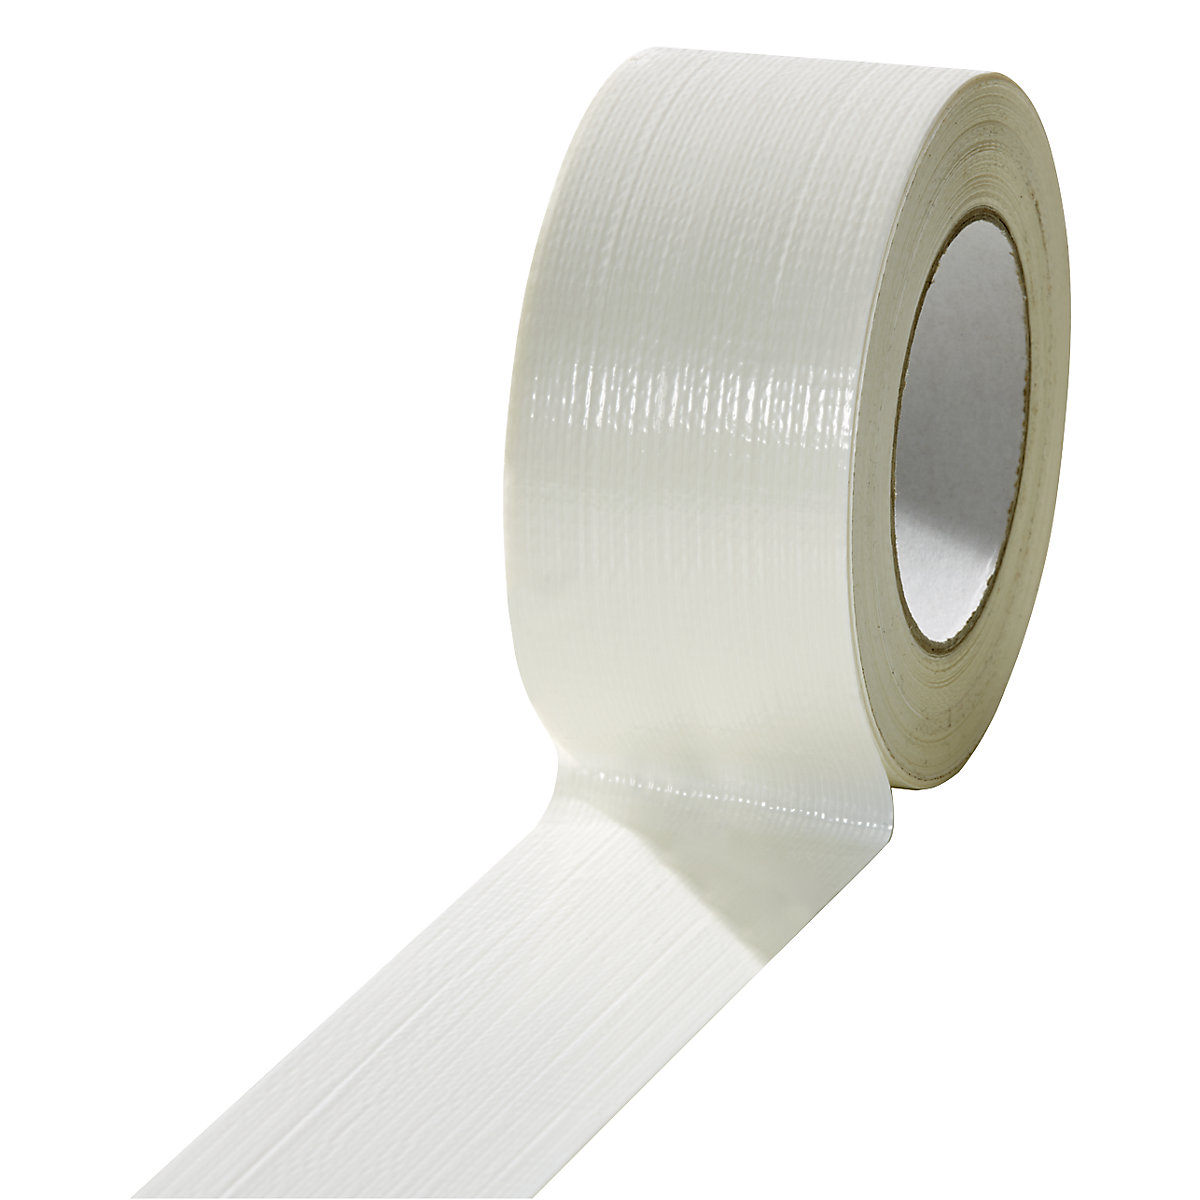 Tkaninová páska, v různých barvách, bal.j. 18 rolí, bílá, šířka pásky 50 mm-1